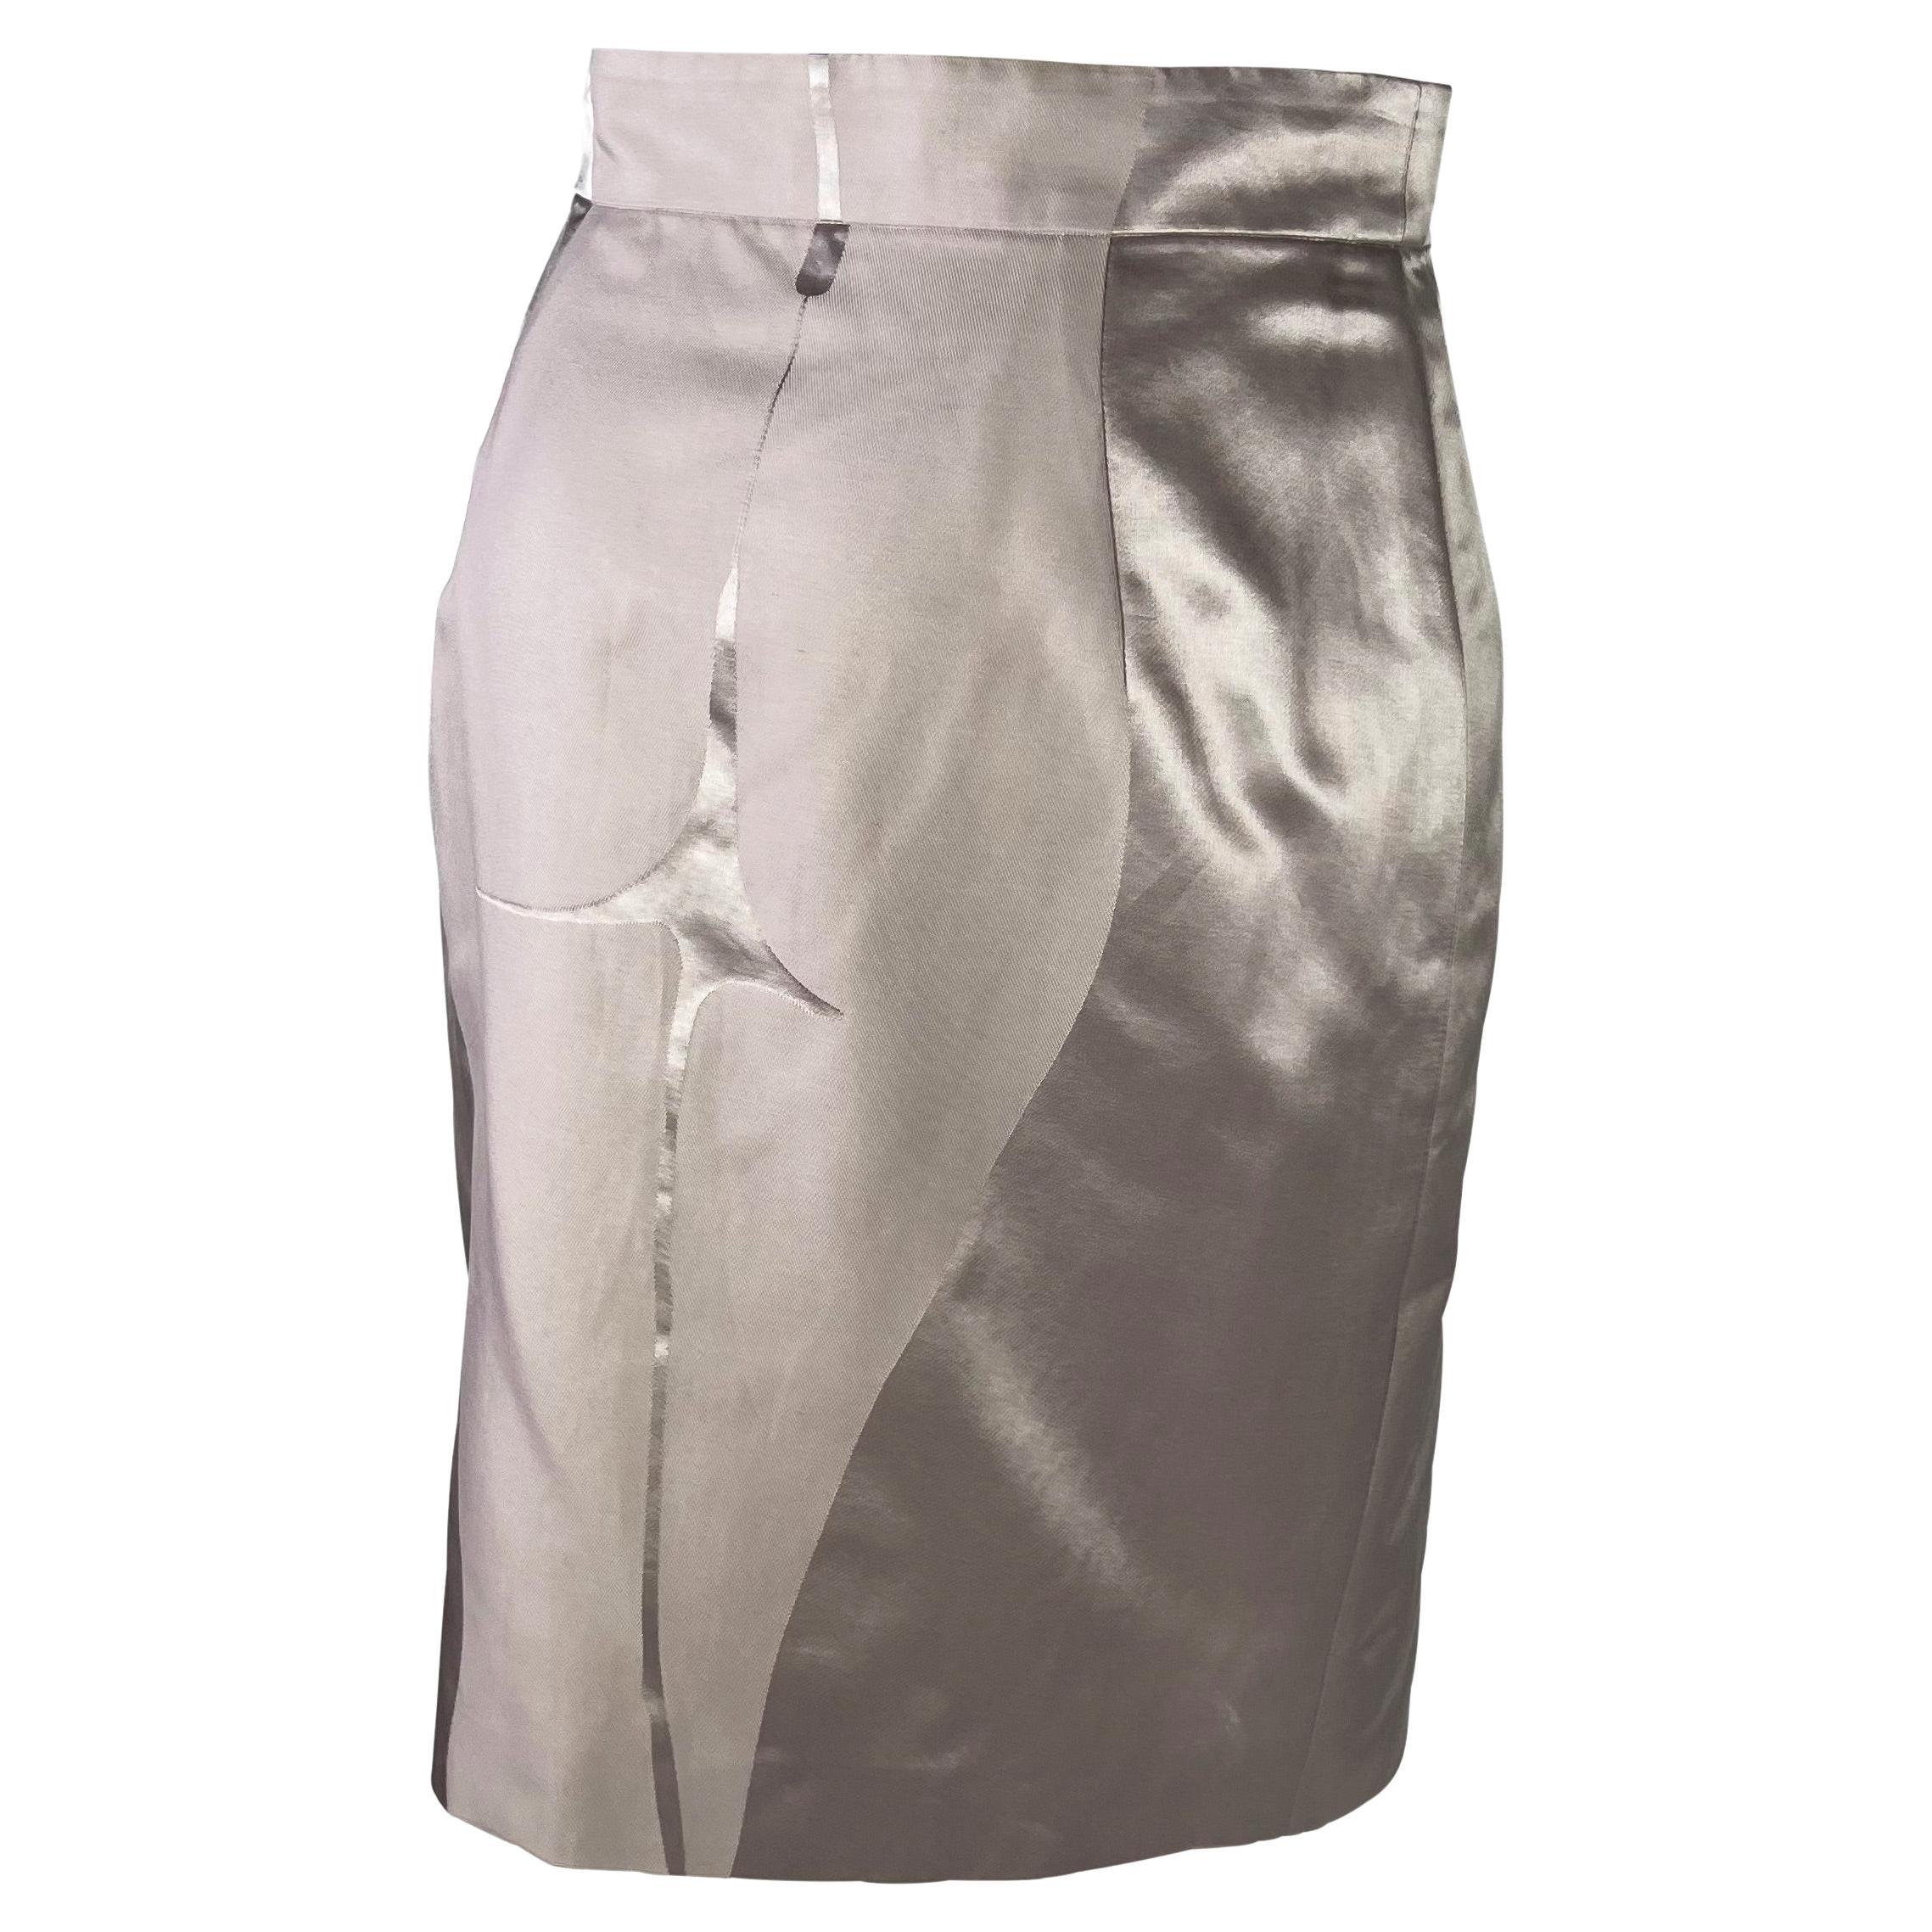 Gray S/S 2003 Yves Saint Laurent by Tom Ford Runway Female Body Print Lavender Skirt For Sale